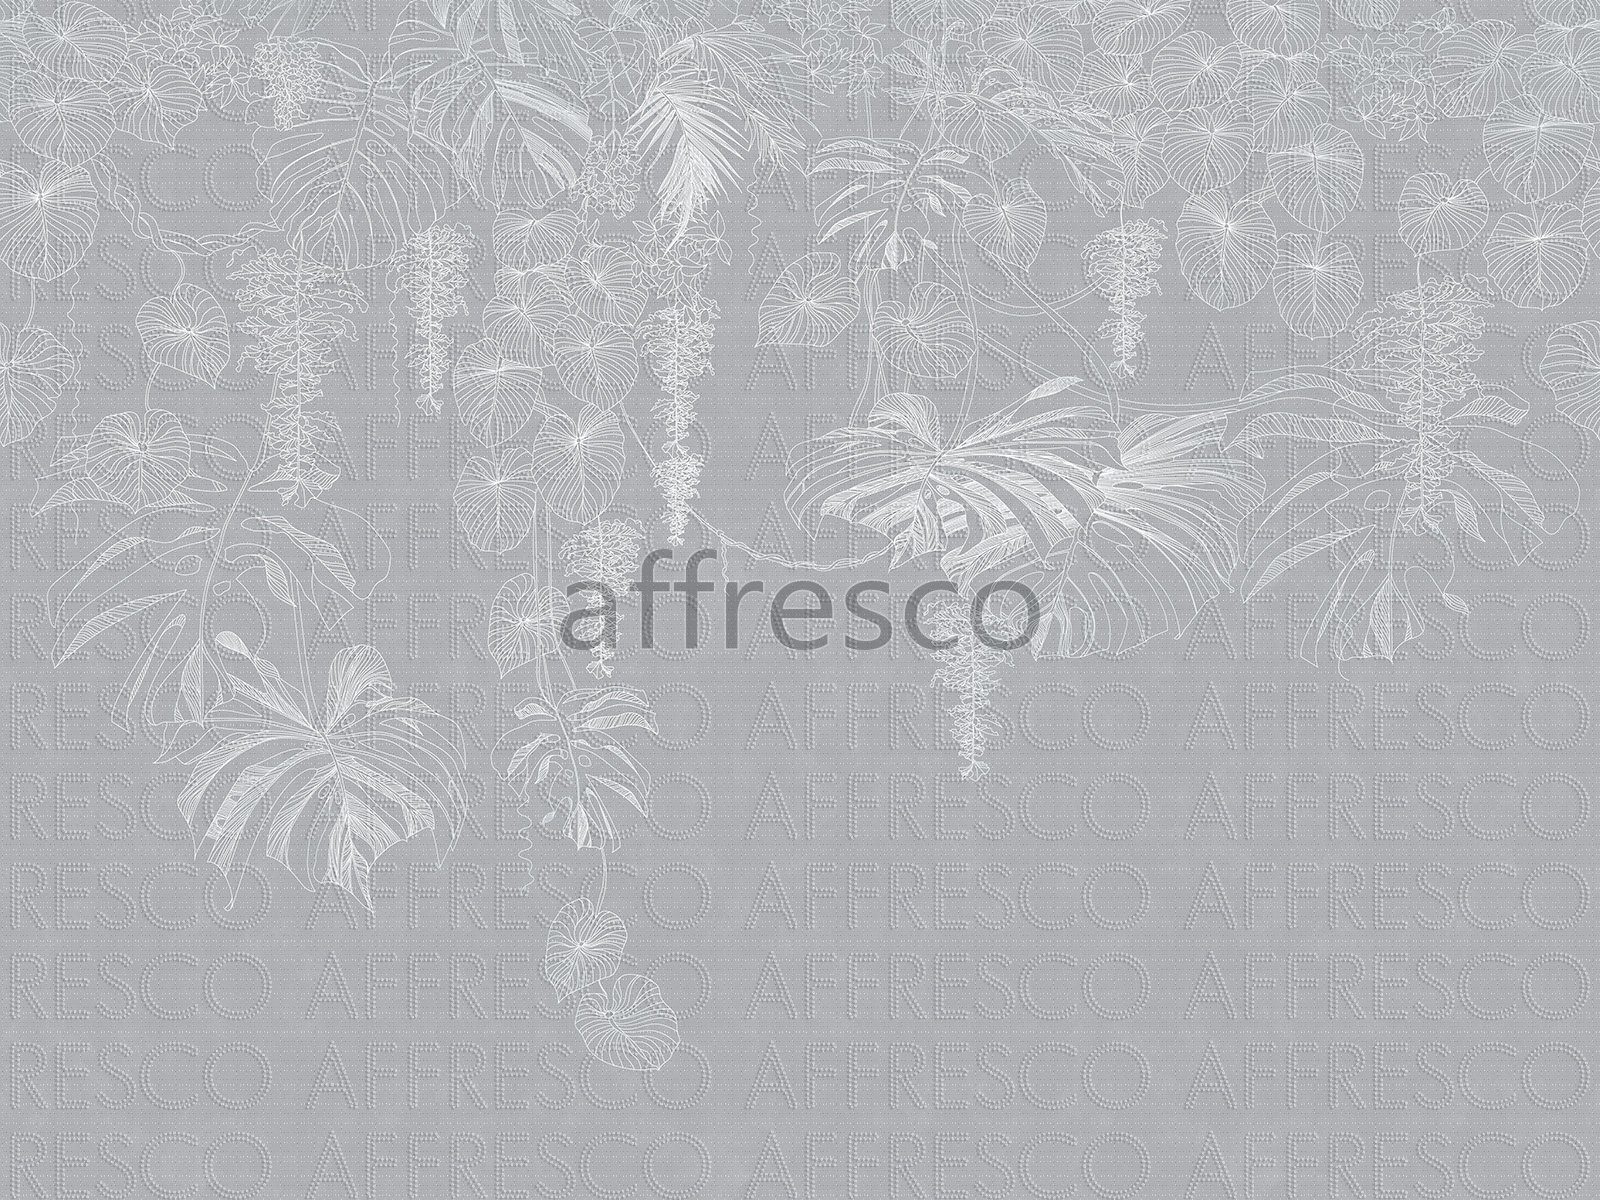 AF2124-COL4 | Line Art | Affresco Factory